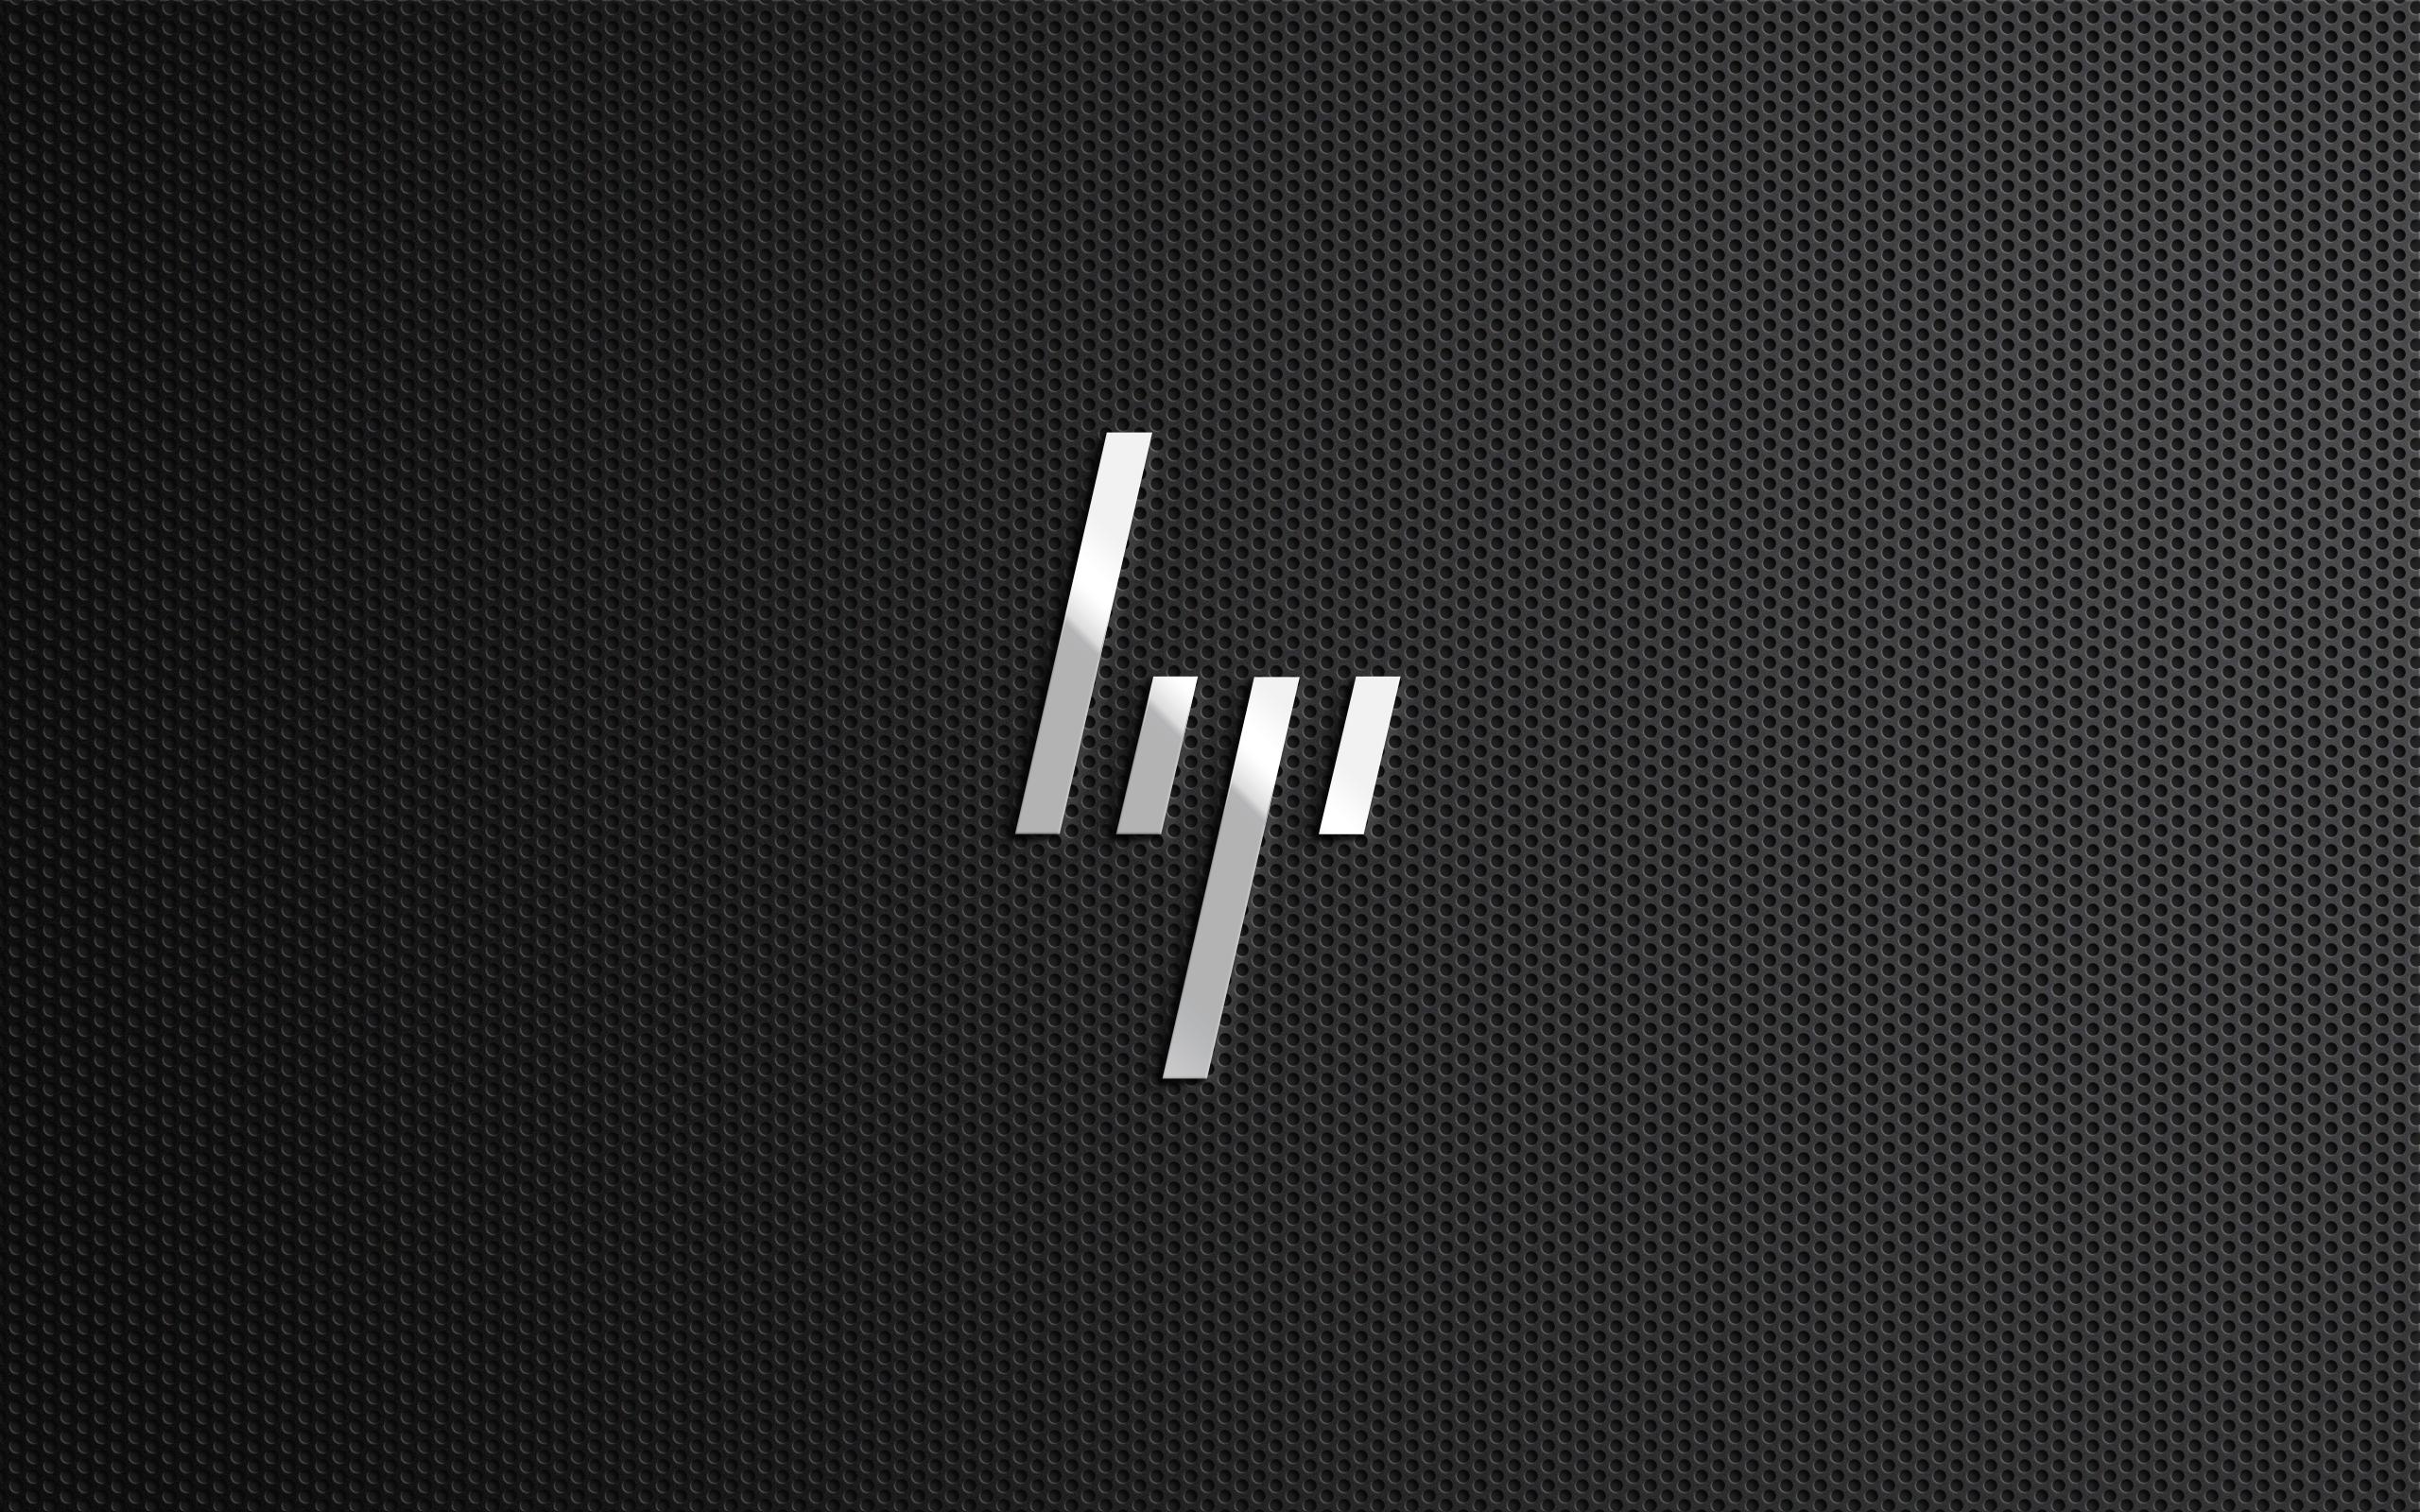 New Hewlett Packard Logo - Hewlett Packard Wallpaper Image Group (39+)